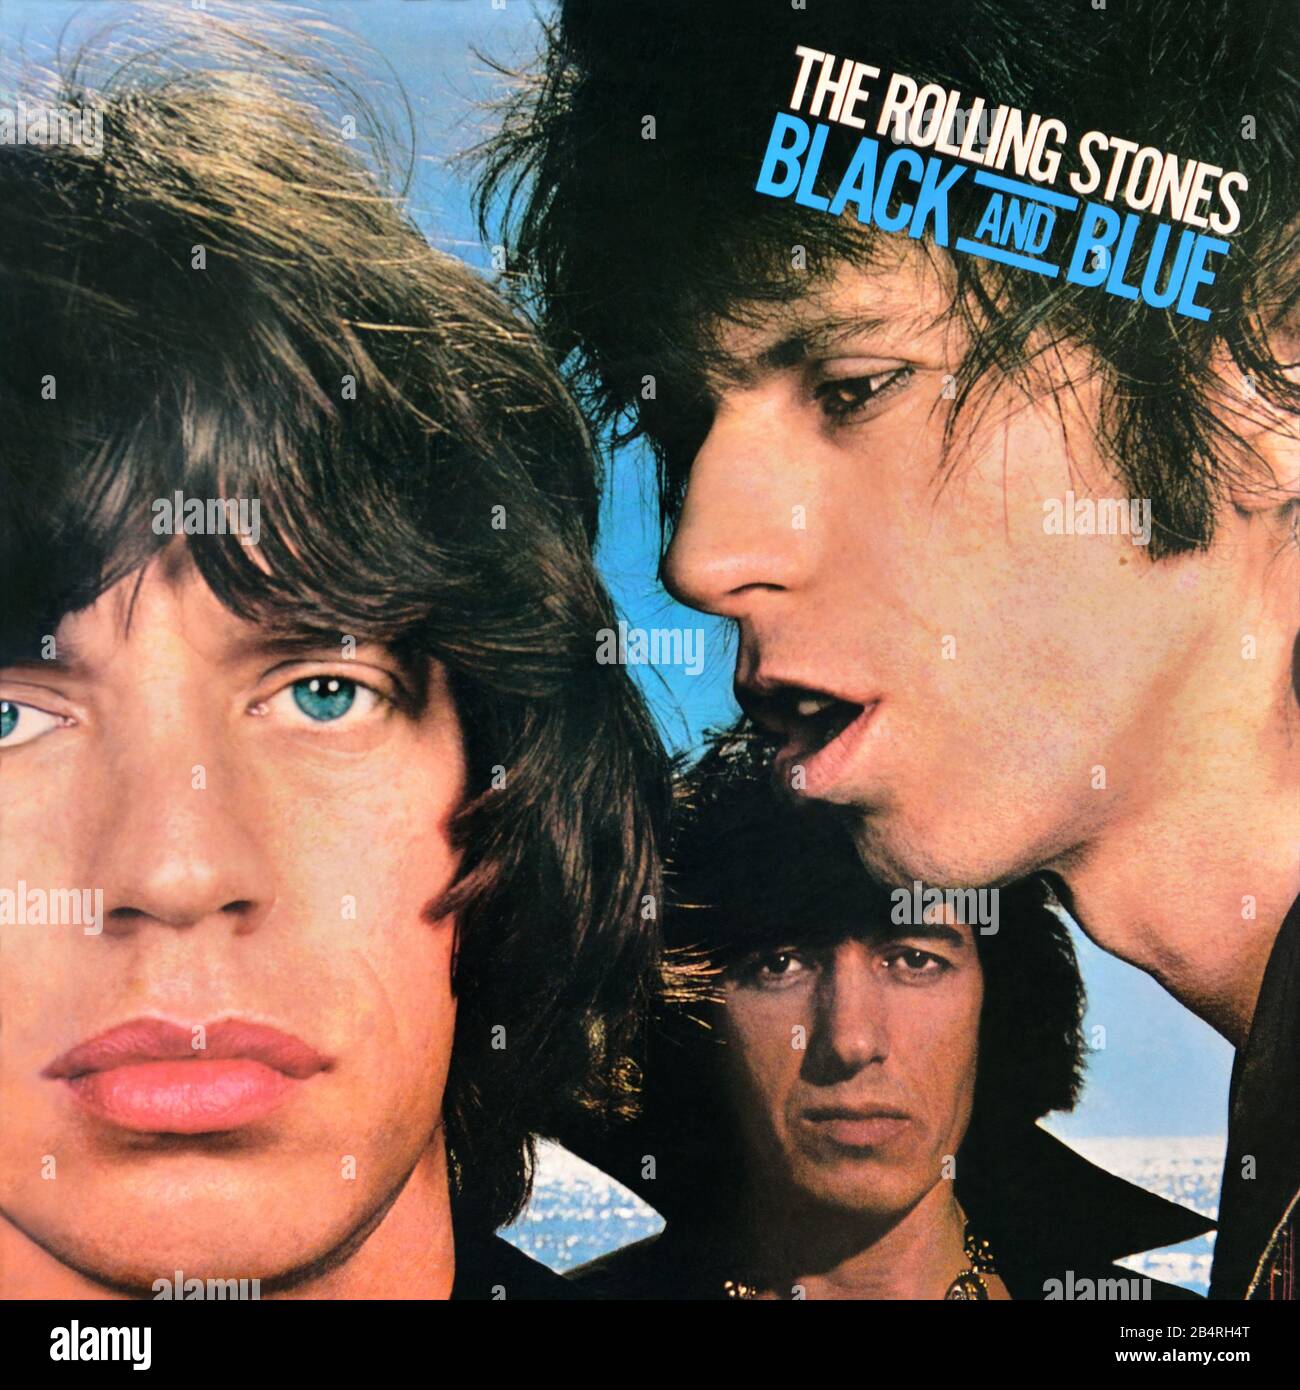 The Rolling Stones - original Vinyl Album Cover - Black and Blue - 1976 Stockfoto